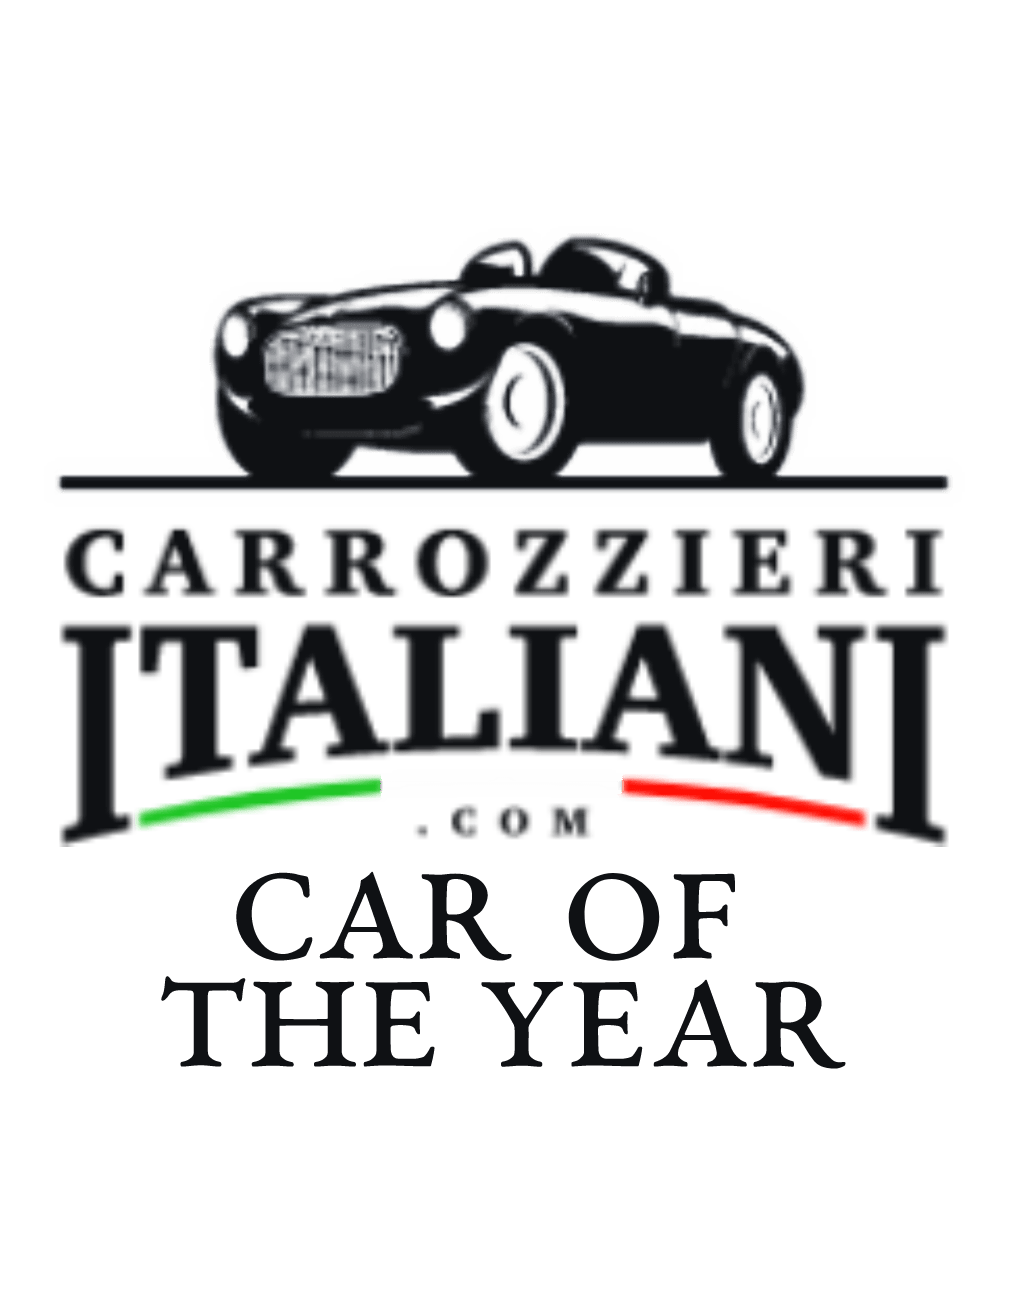 Carrozzieri Italiani Car of the Year